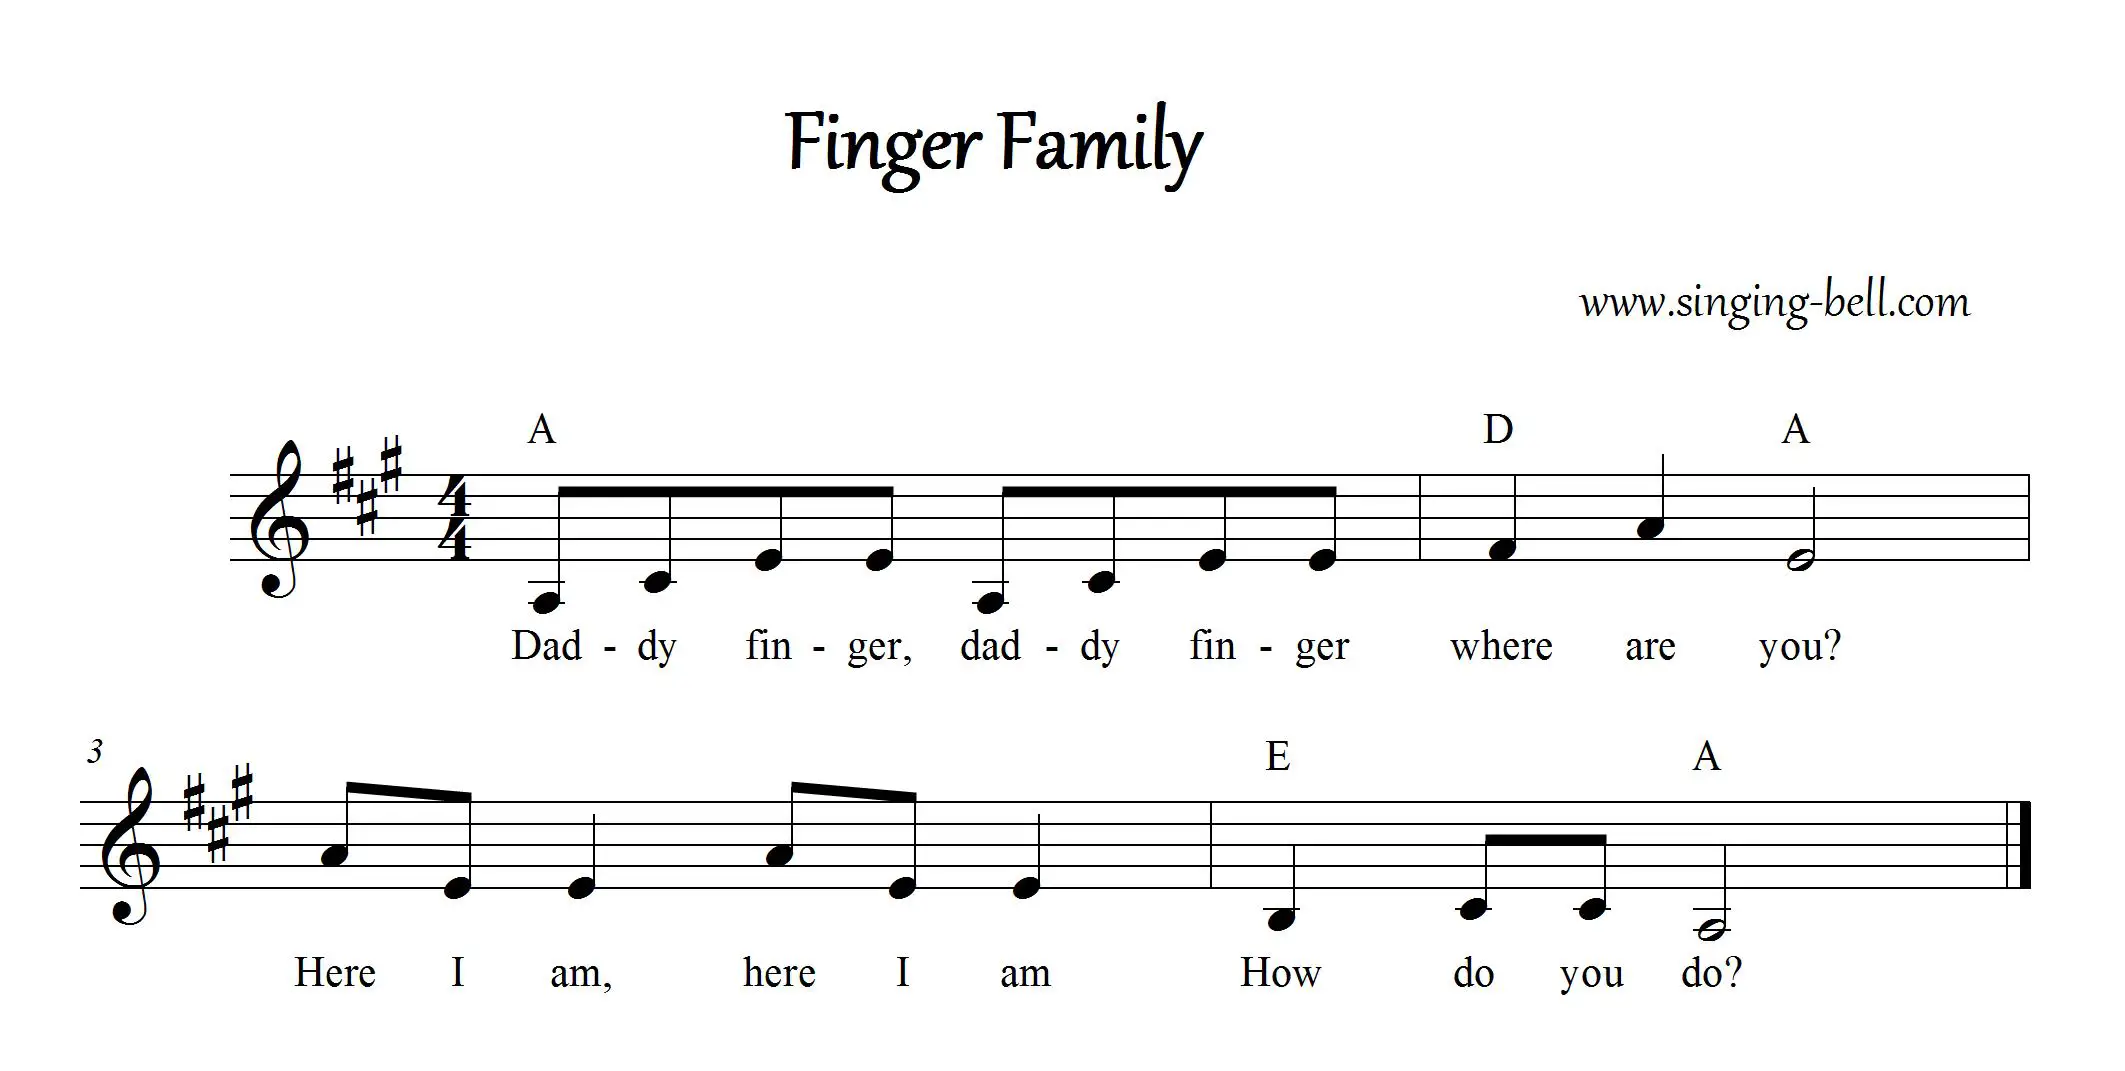 Finger Family Sheet Music (in A)